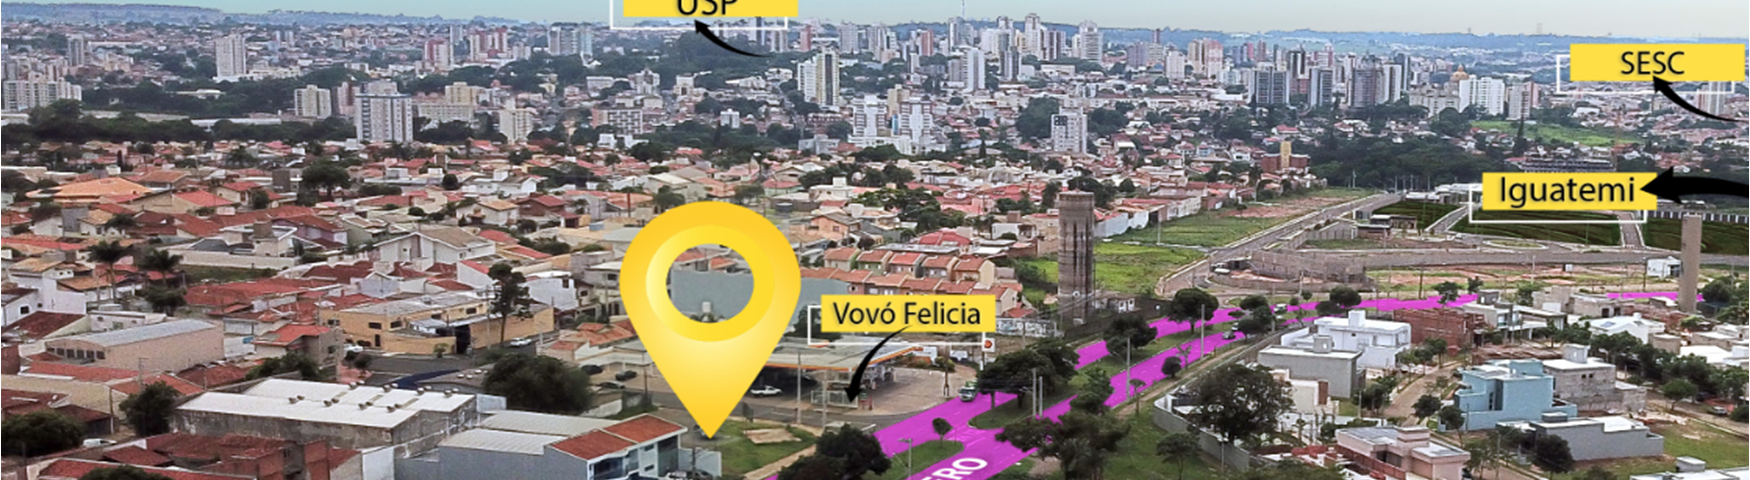 mapa aéreo com a parte sudoeste de São Carlos ao fundo, em primeiro plano a avenida Bruno Ruggiero na localização do @22